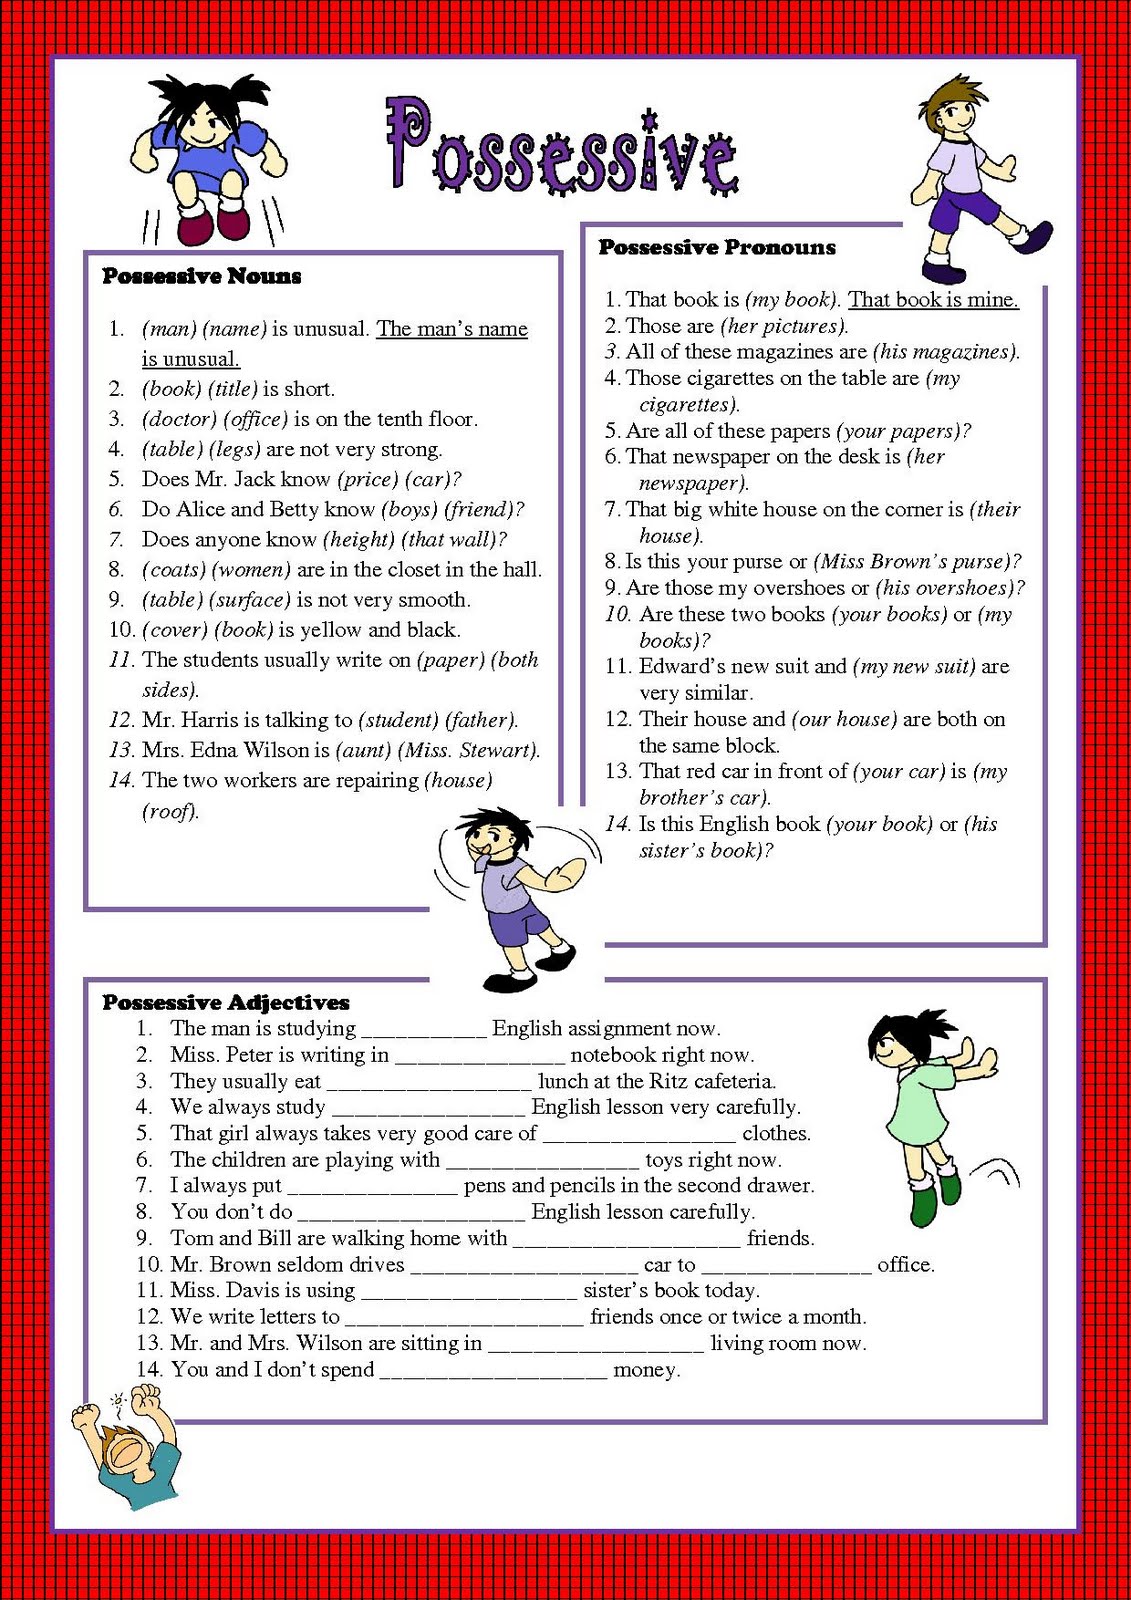 possessive-pronouns-online-pdf-worksheet-possessive-pronoun-pronoun-activities-possessive